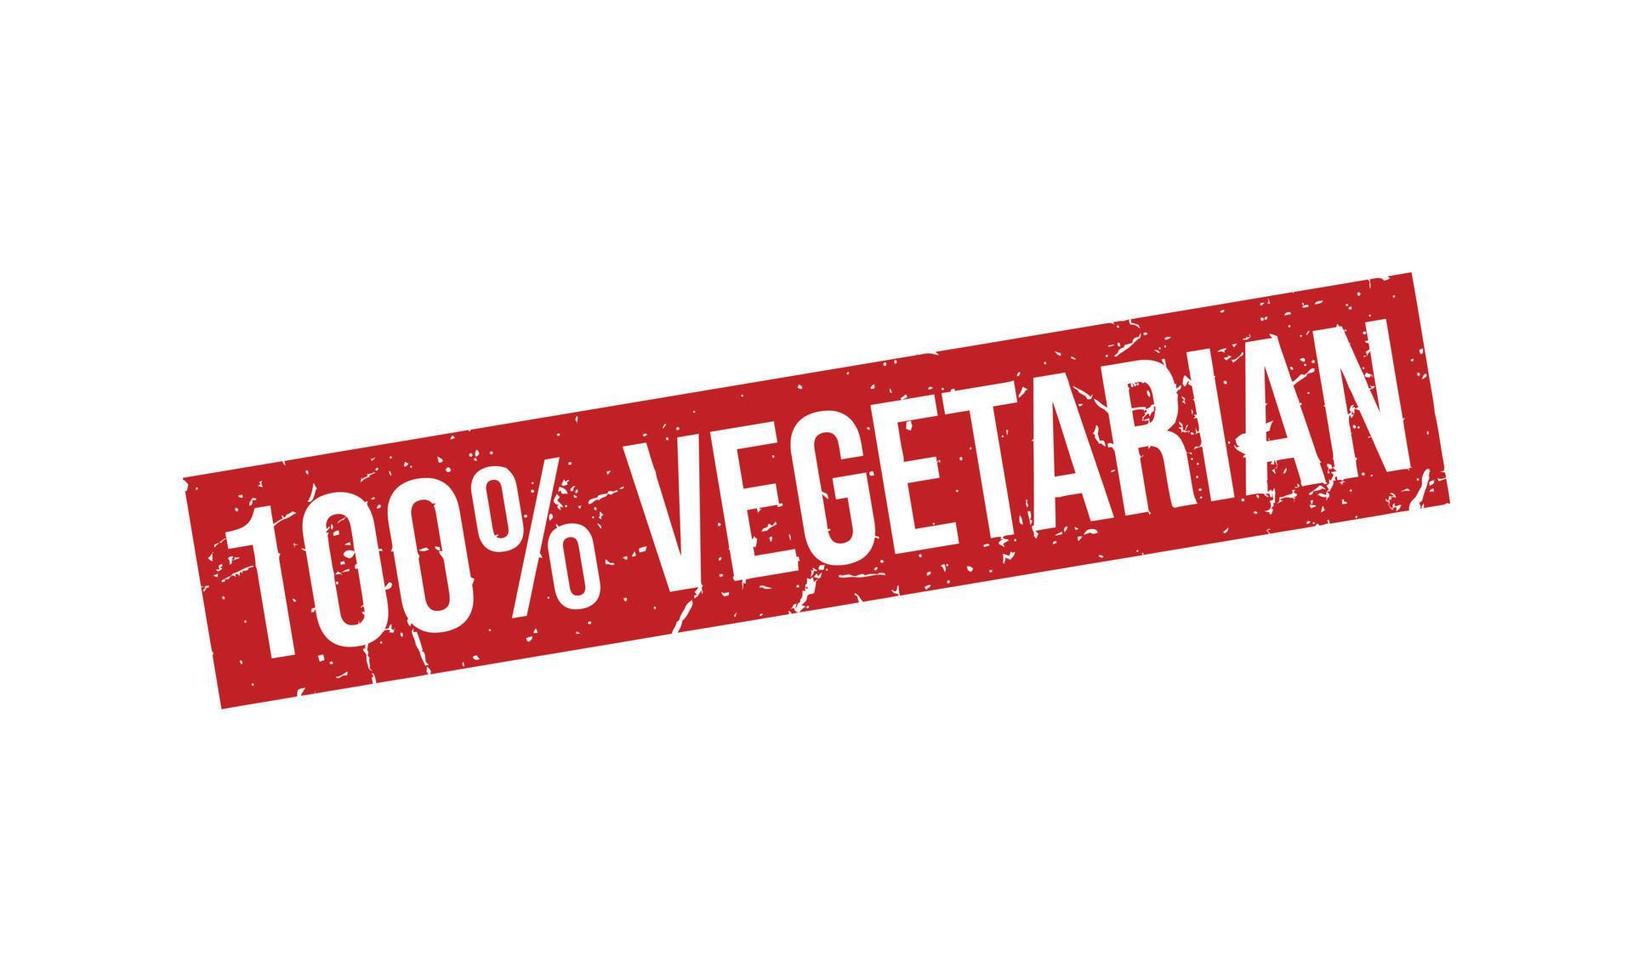 100 Prozent Vegetarier Gummi Briefmarke vektor